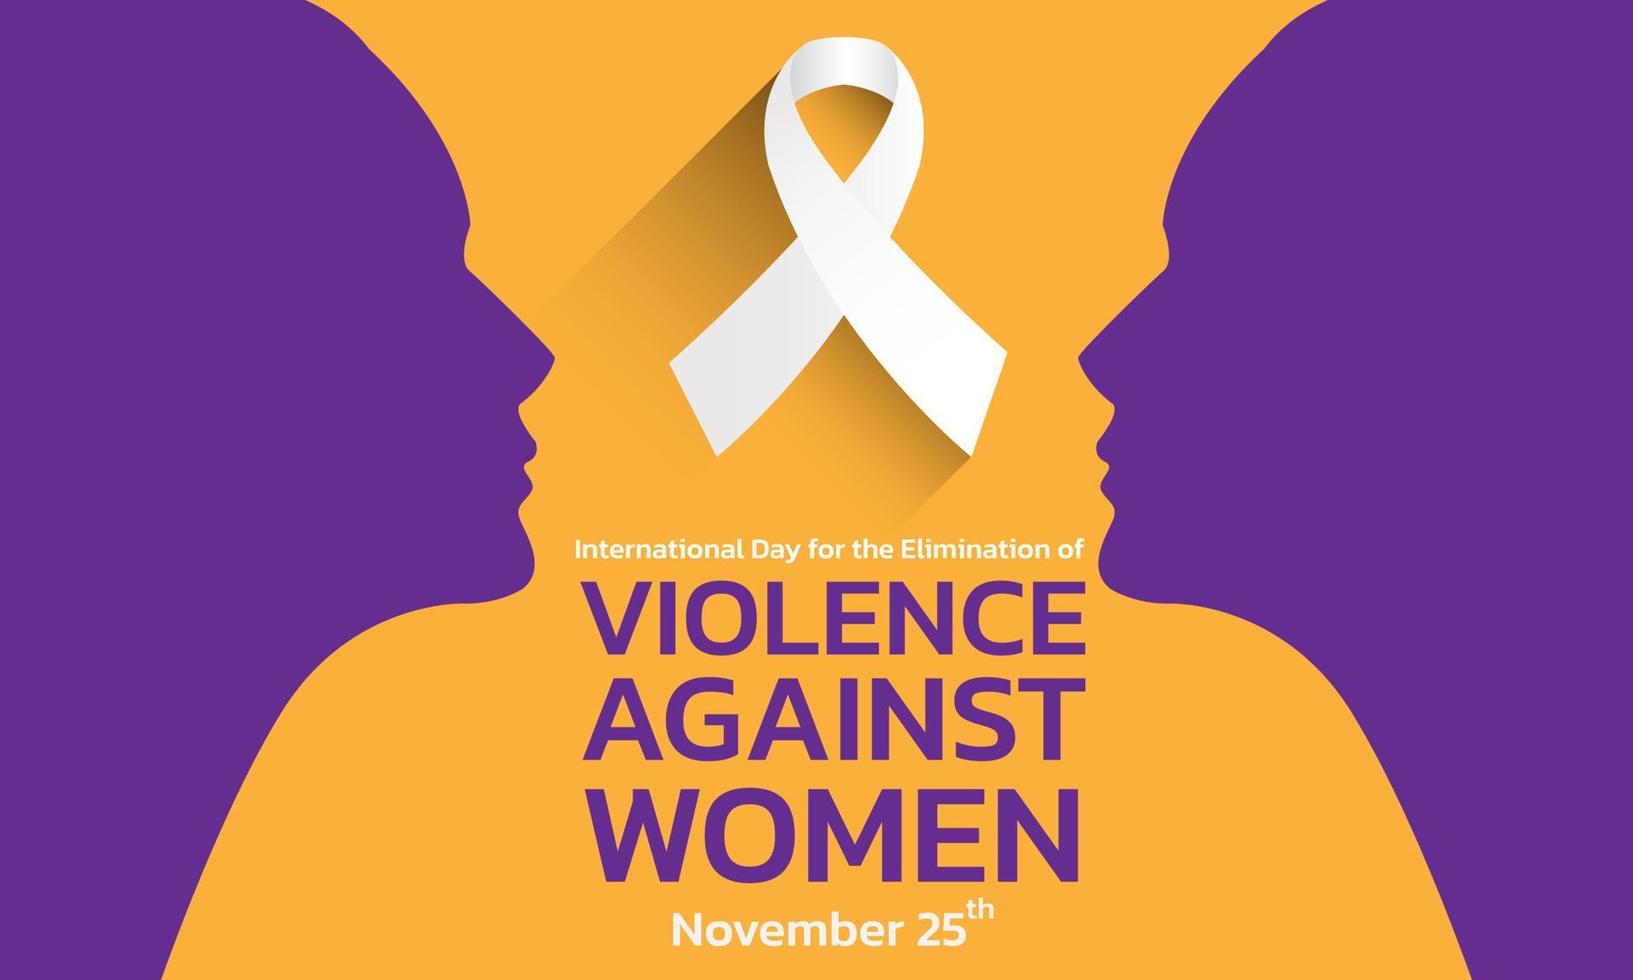 ilustração vetorial de um plano de fundo para o dia internacional para a eliminação da violência contra as mulheres vetor